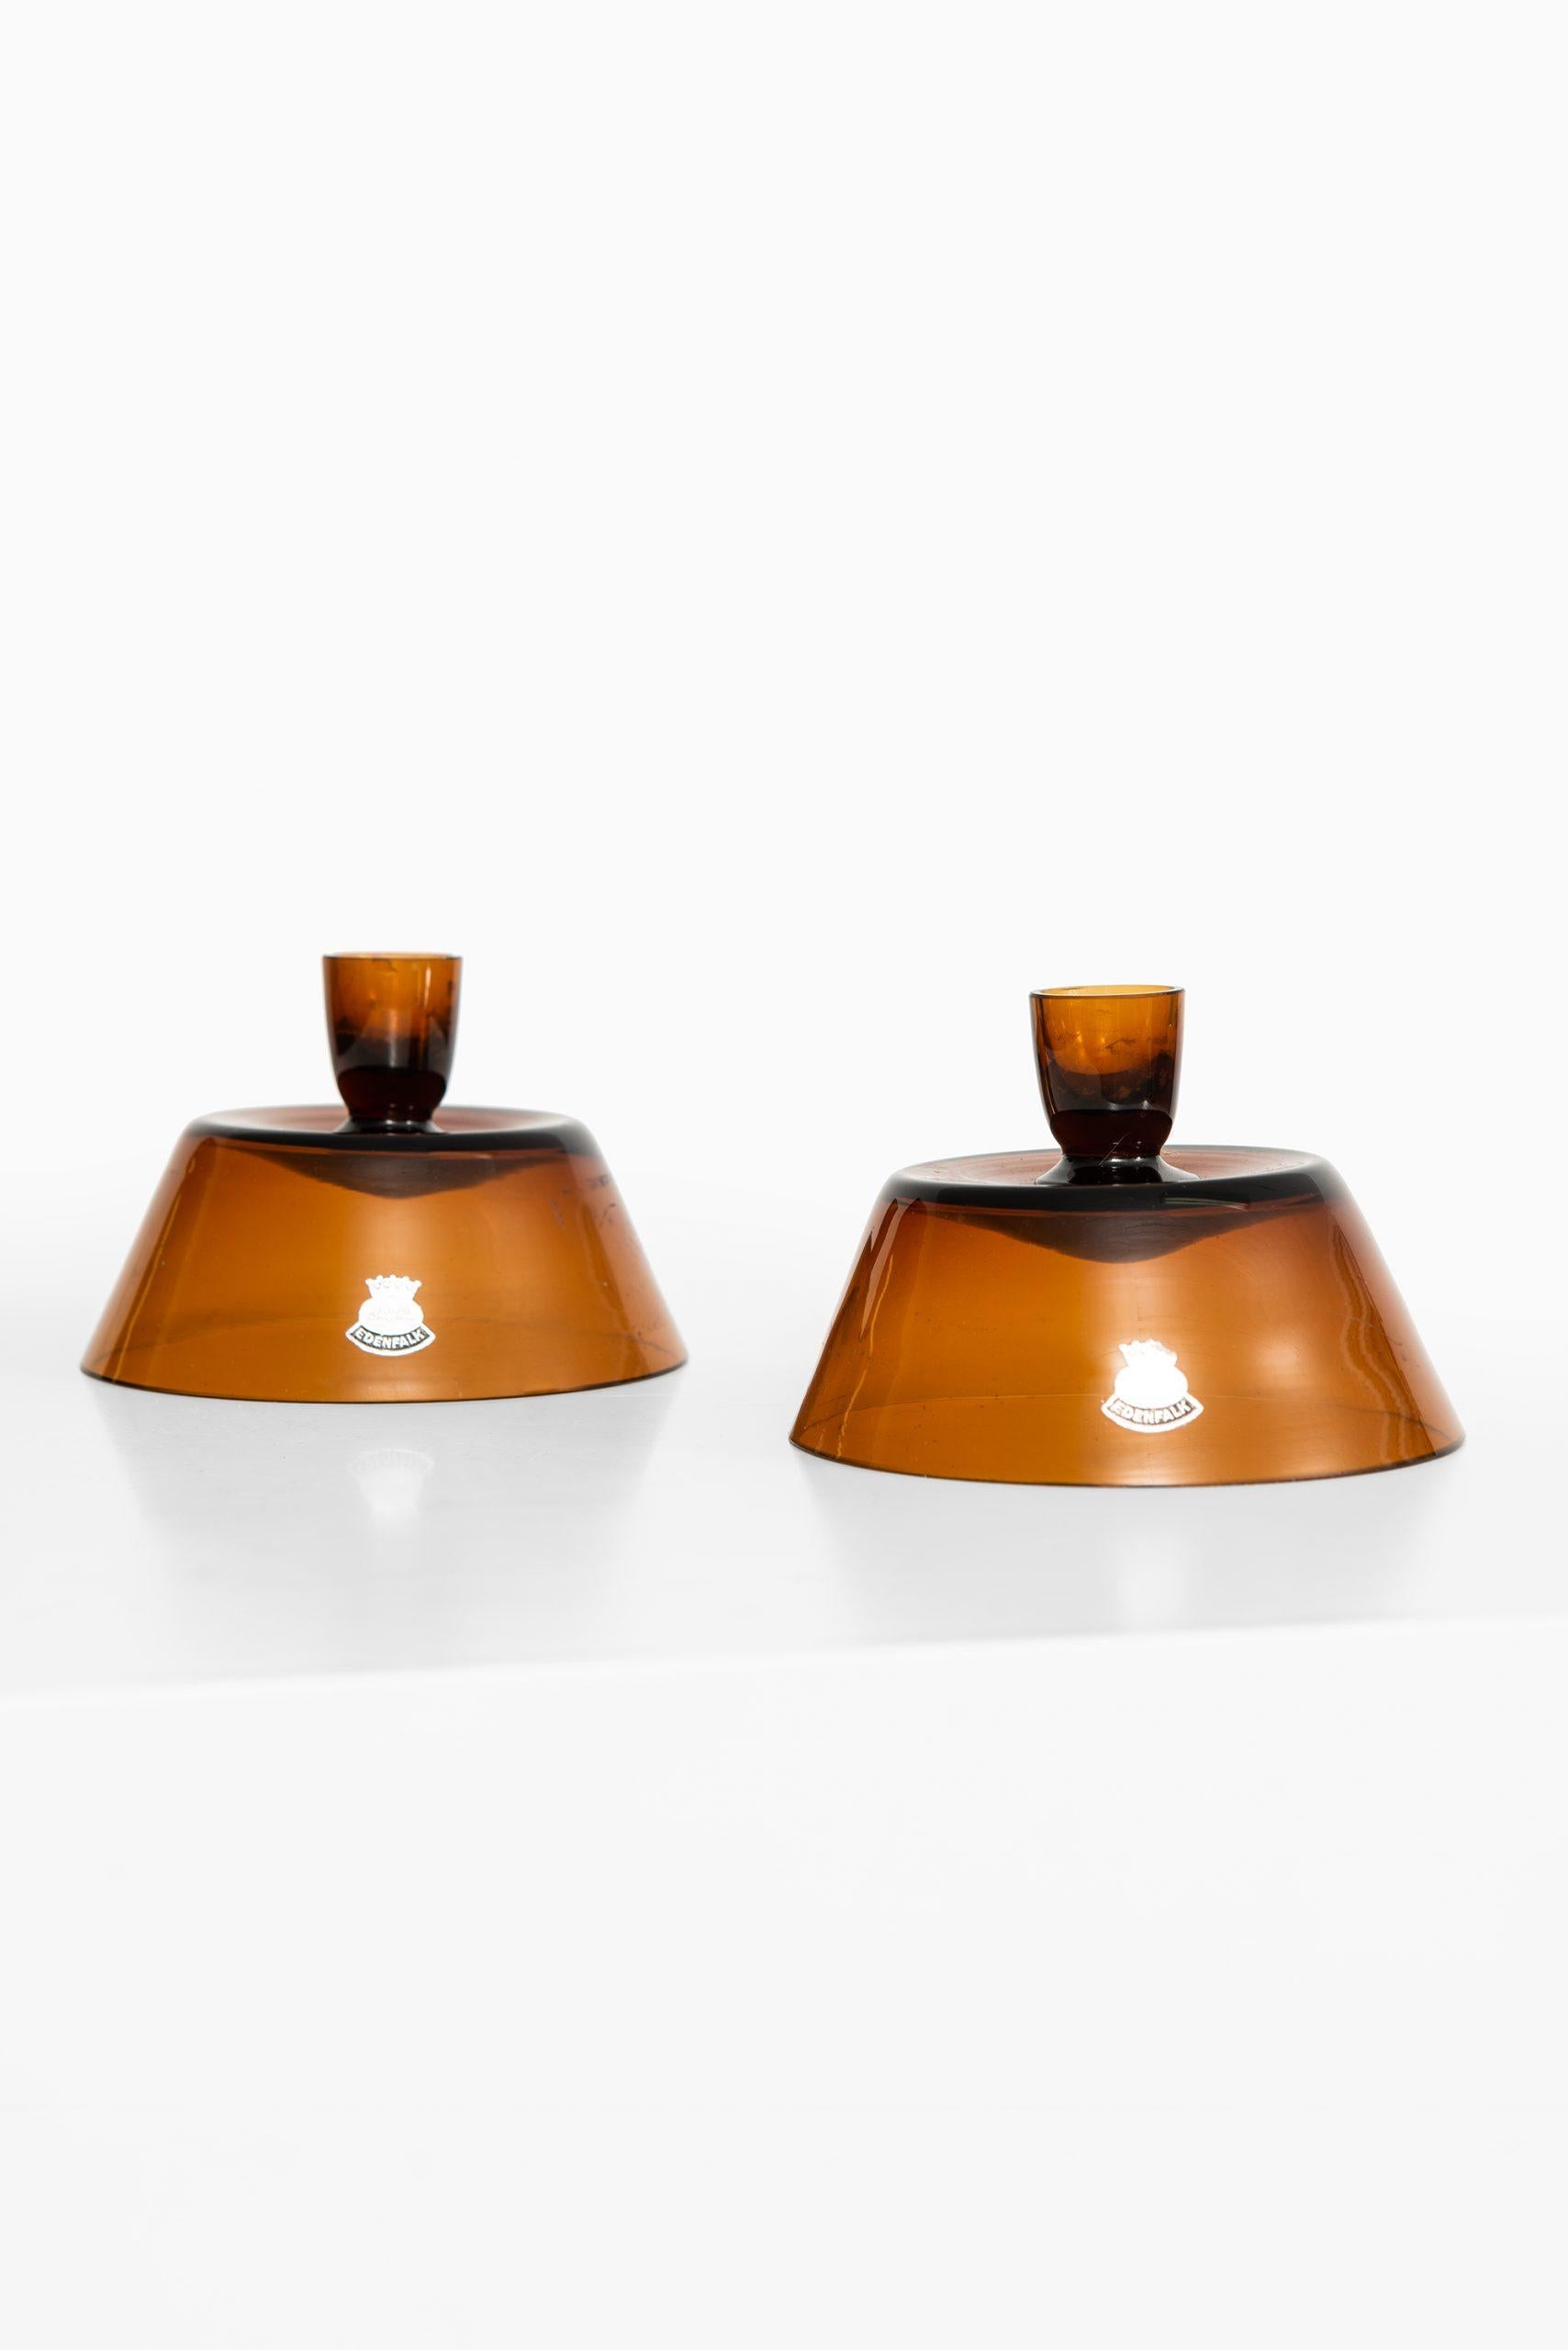 Swedish Bengt Edenfalk Candlesticks / Vases Produced by Skruf in Sweden For Sale